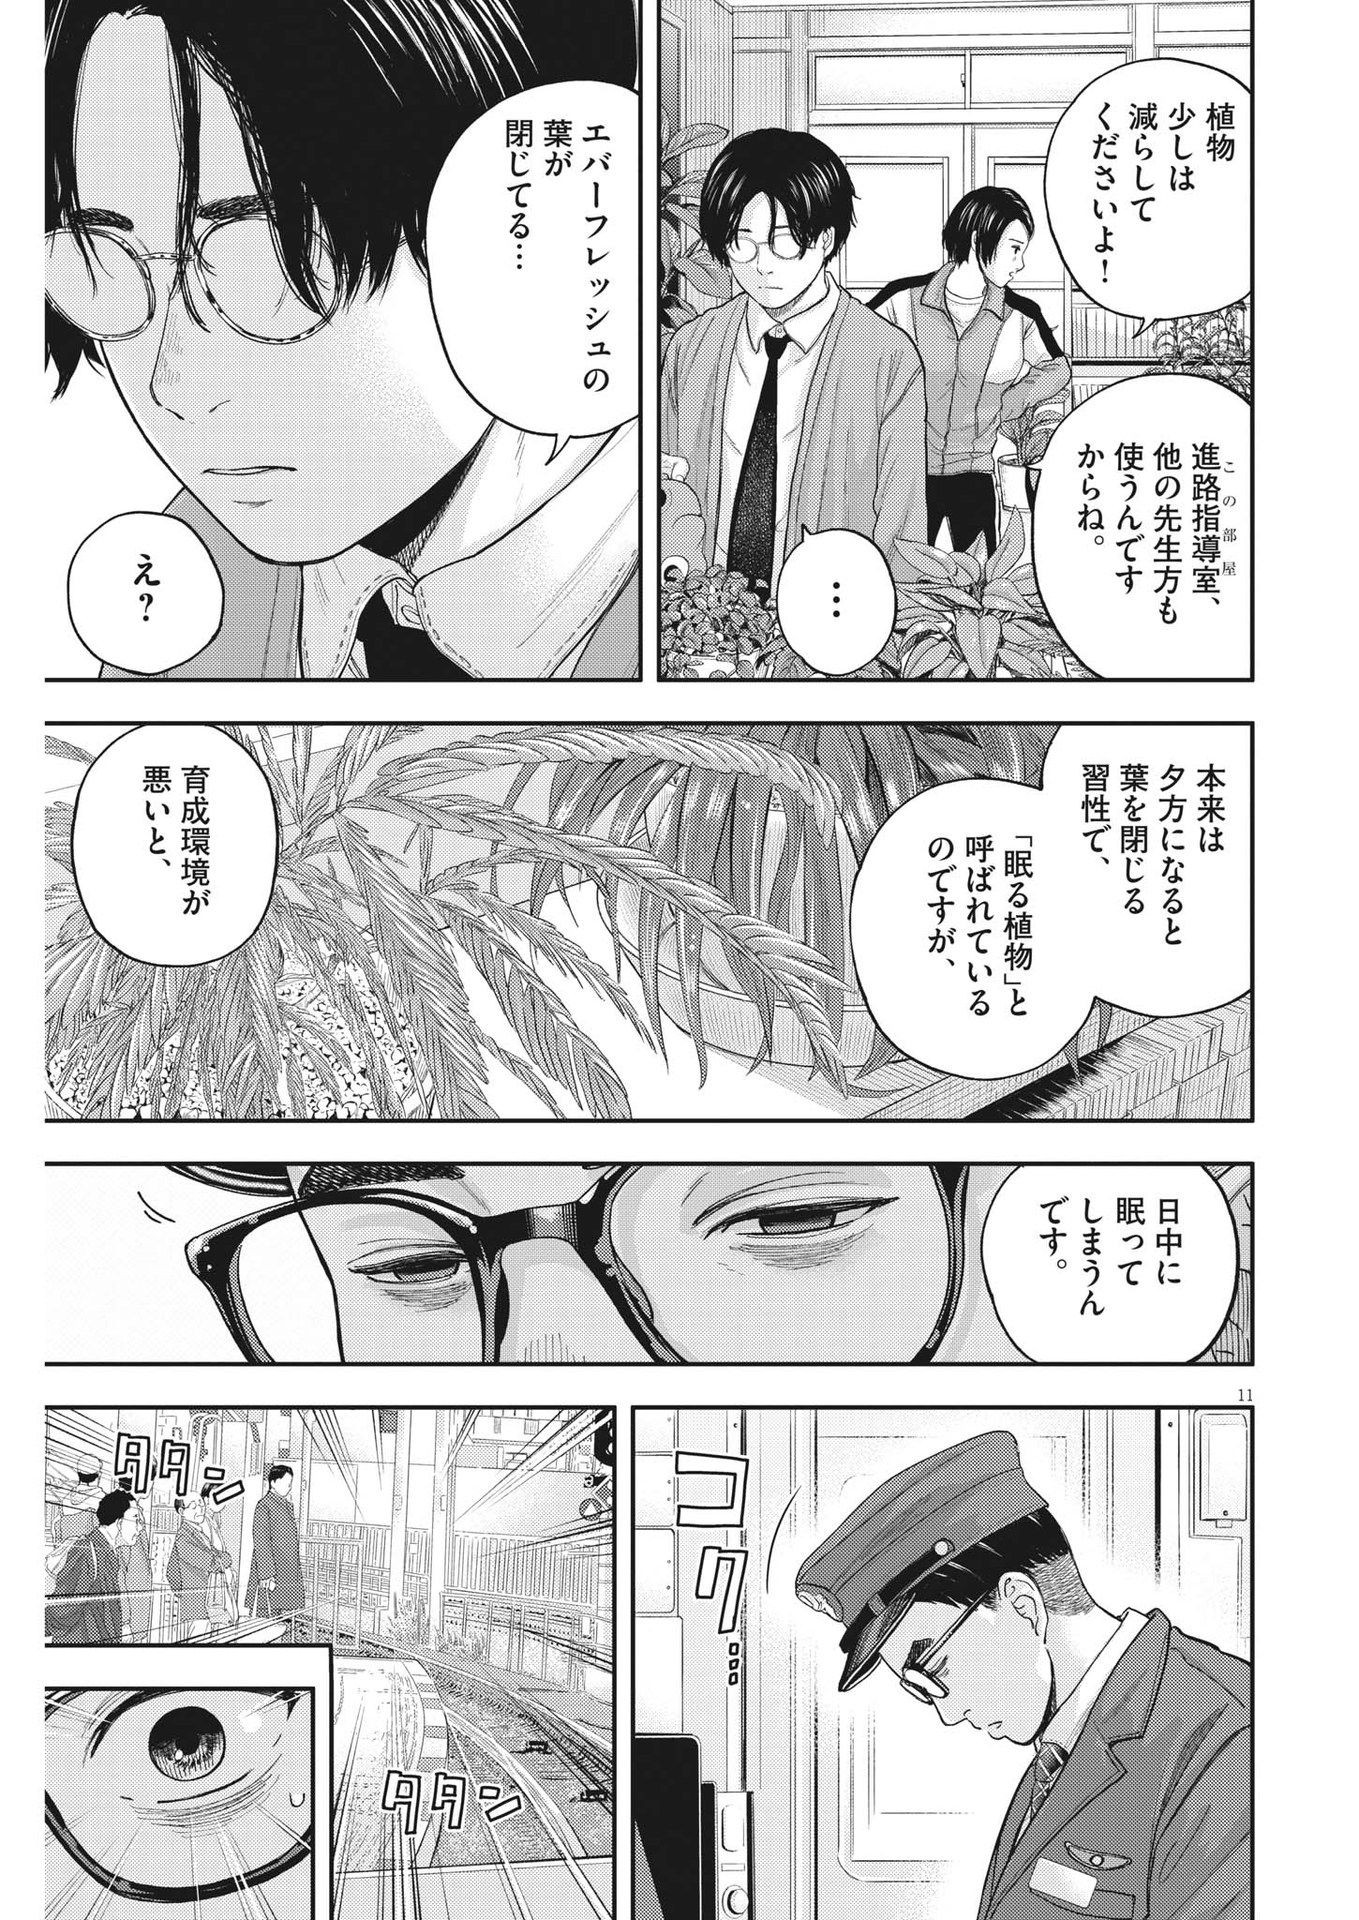 Yumenashi-sensei no Shinroshidou - Chapter 4 - Page 11